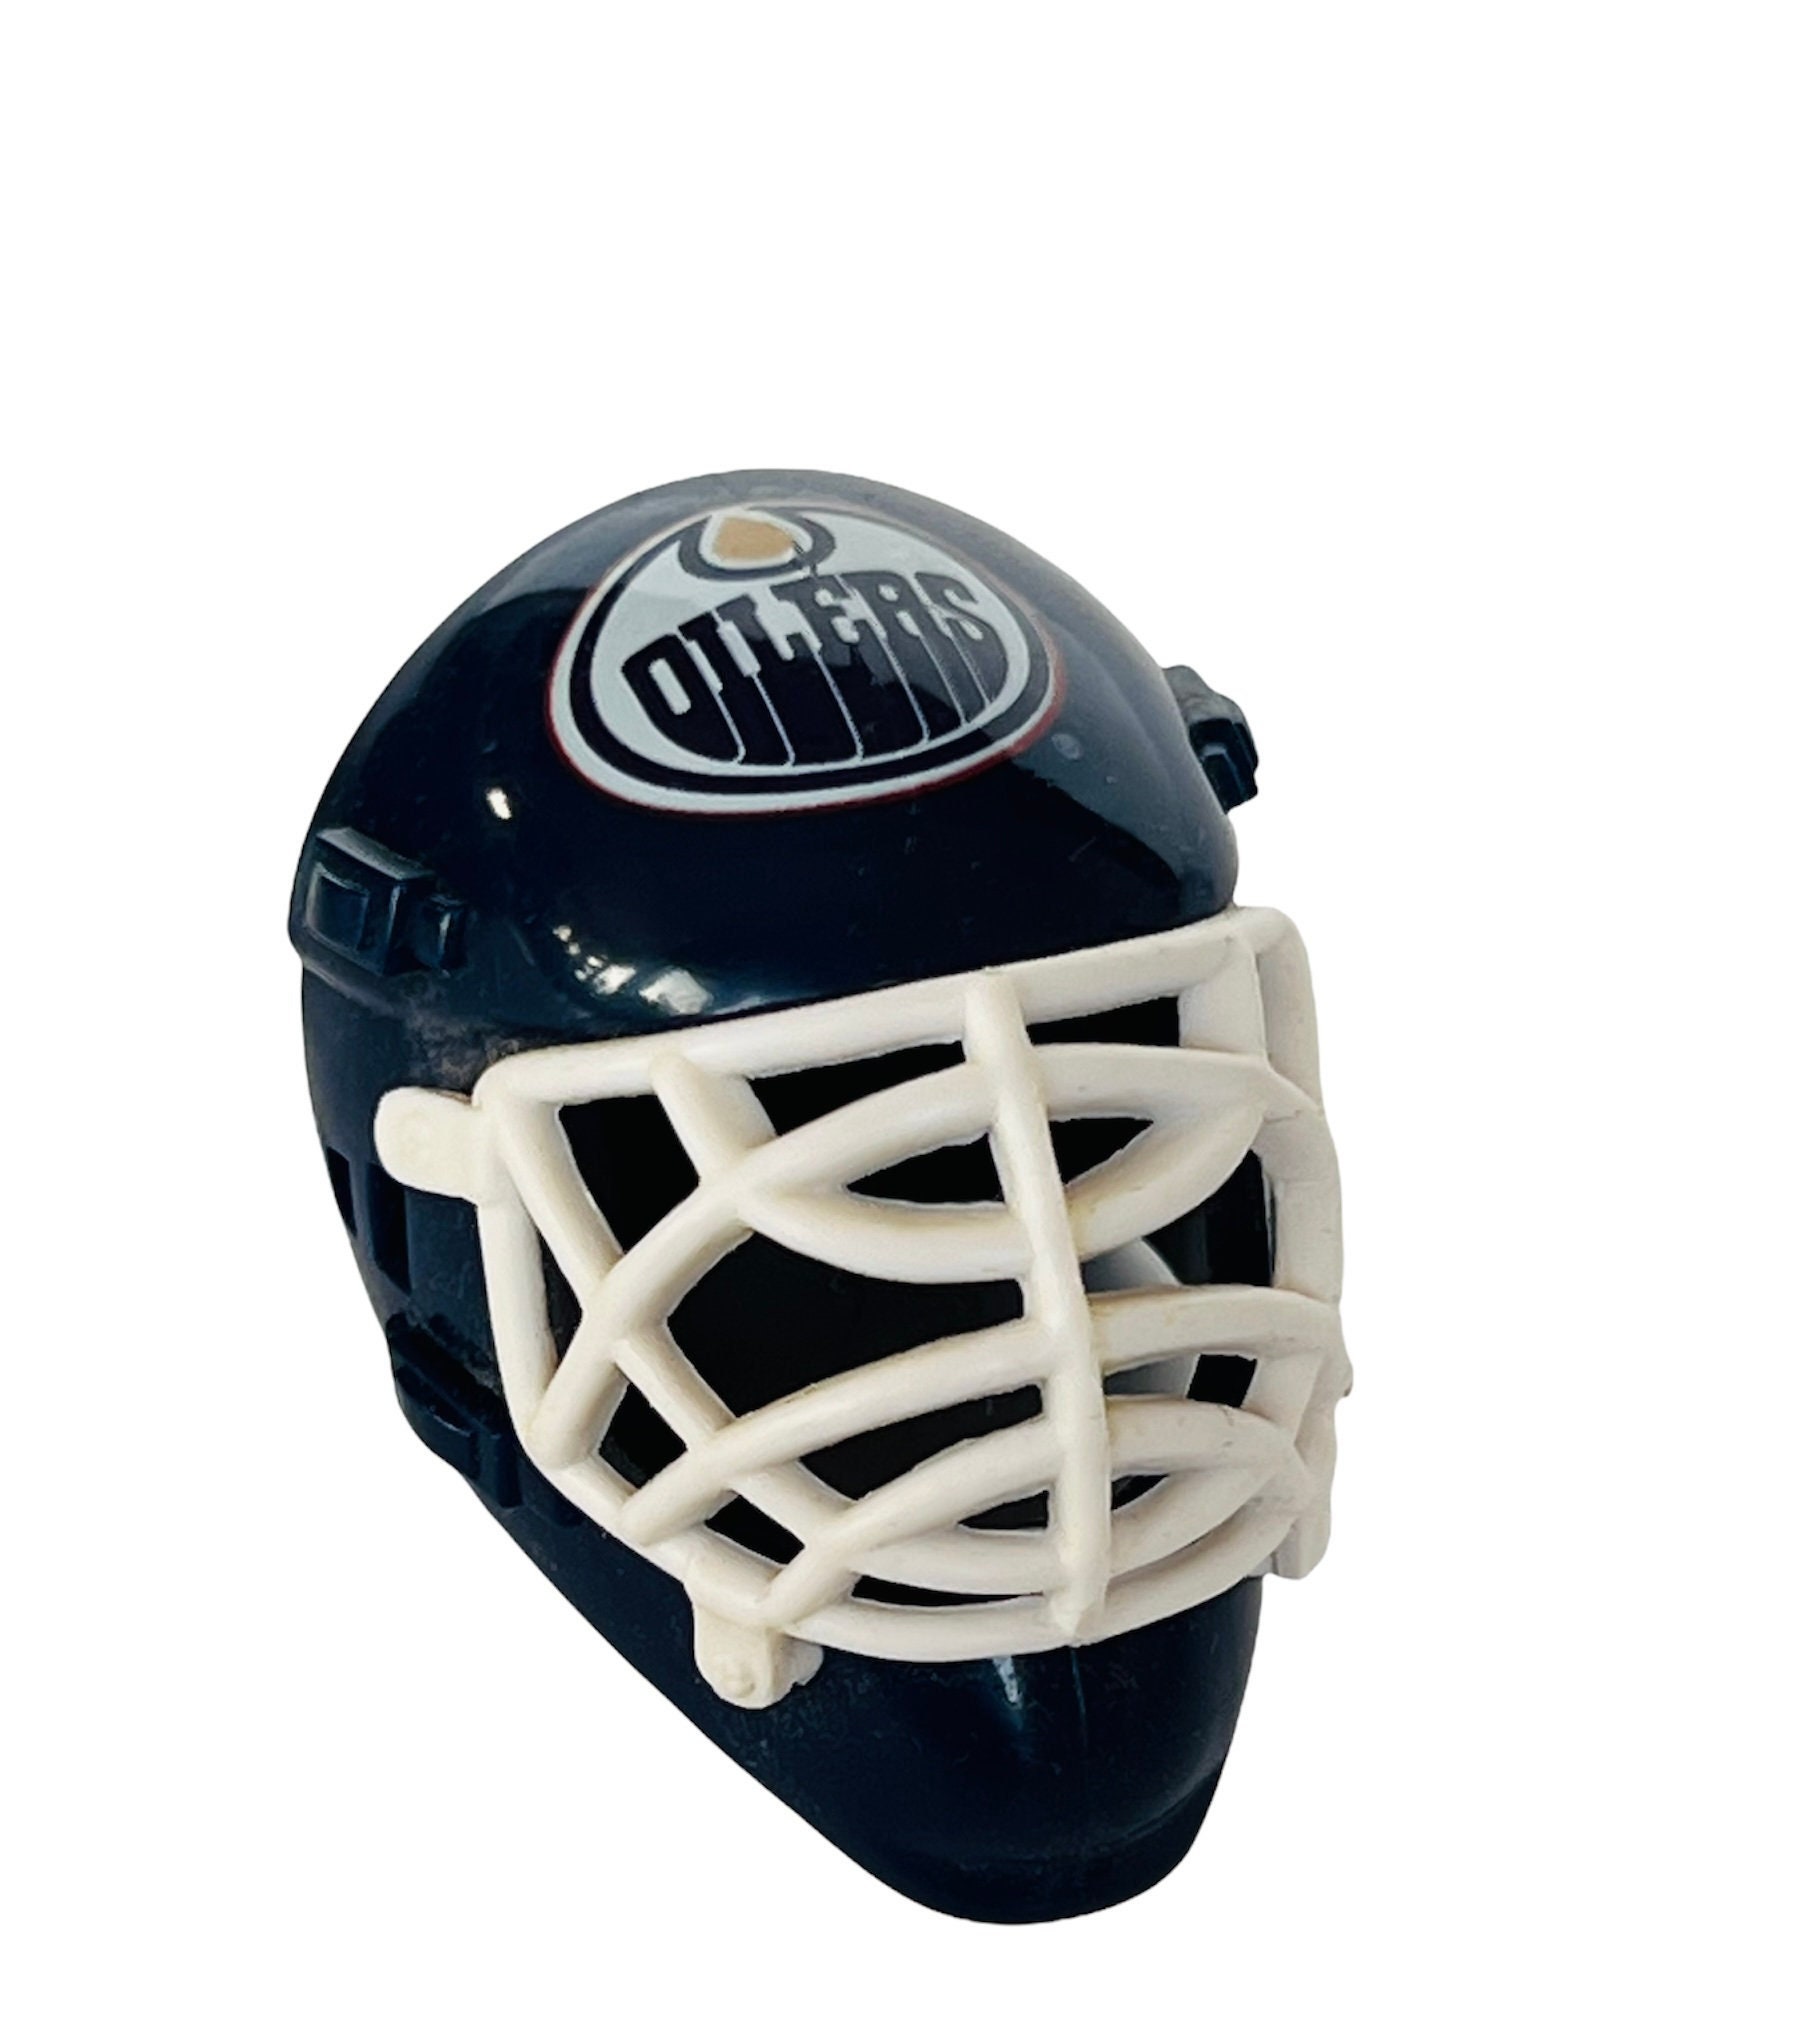 Grant Fuhr Signed Throwback Goalie Mask (JSA Hologram)